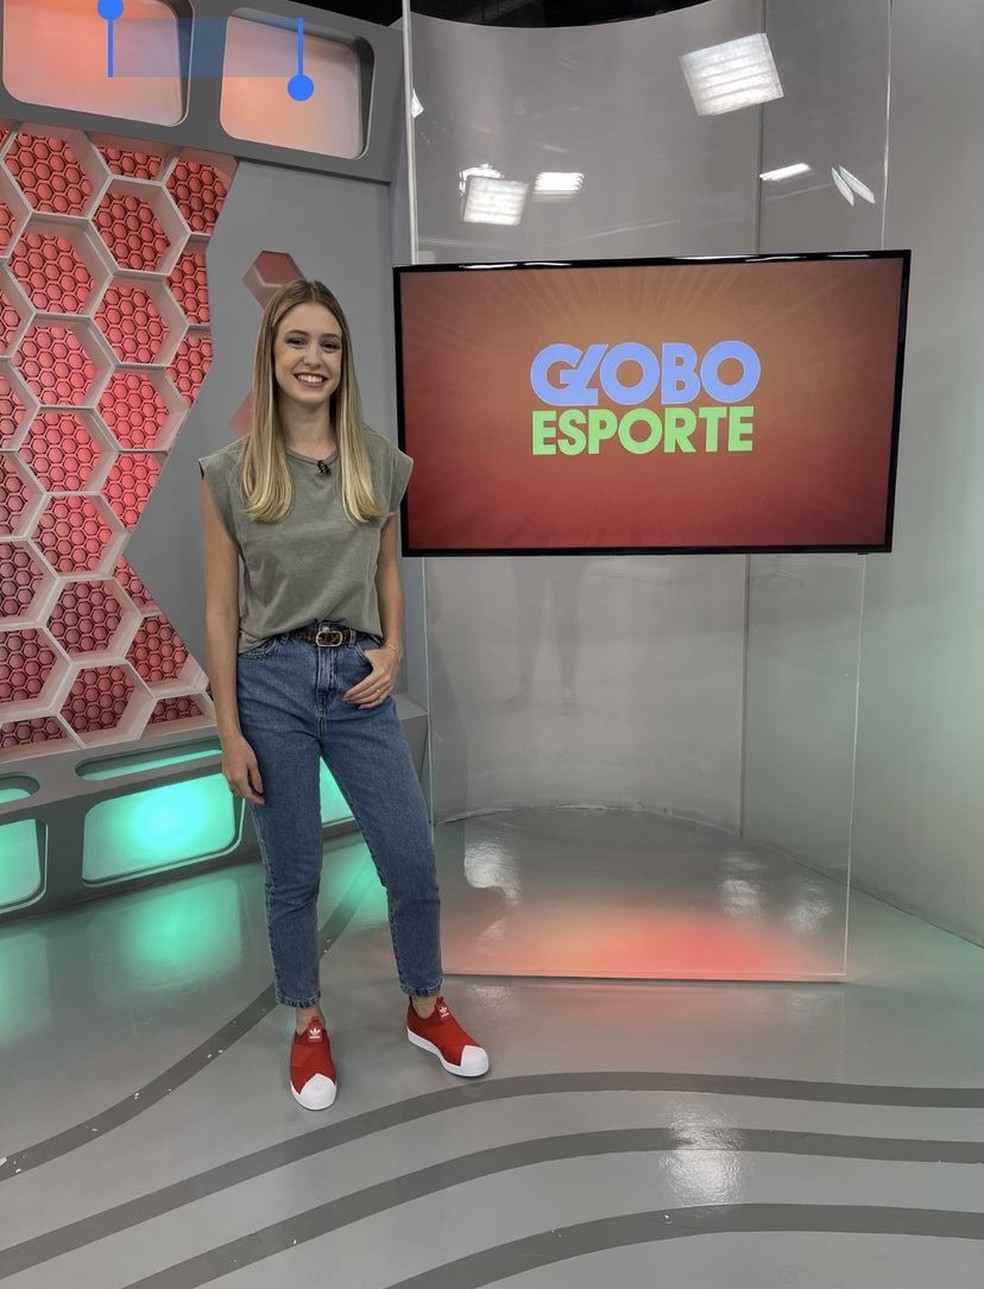 40 anos do Globo Esporte em edição especial - Portal dos Jornalistas